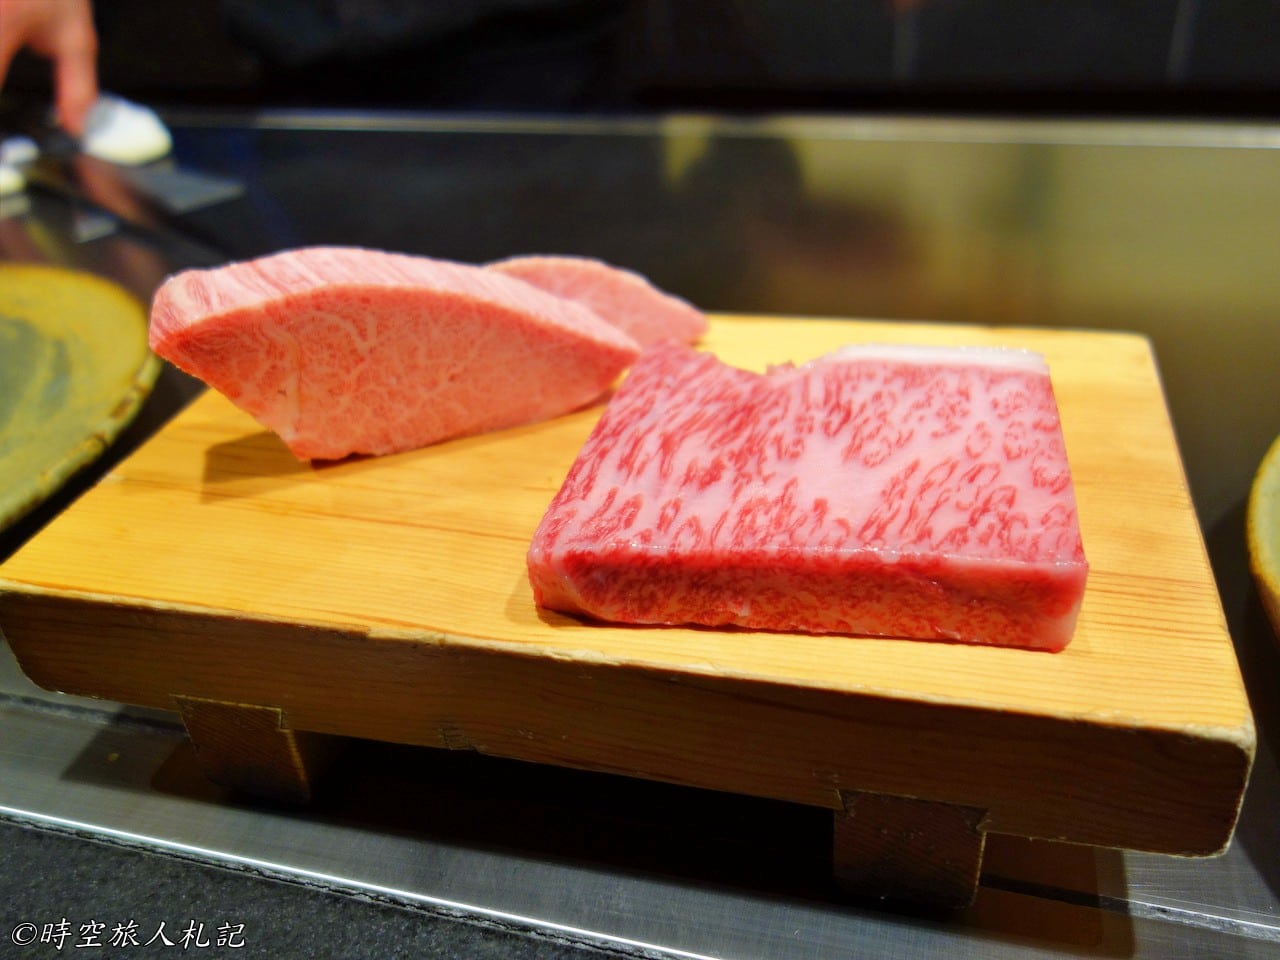 神戶美食,kobe-food,日本神戶美食 17